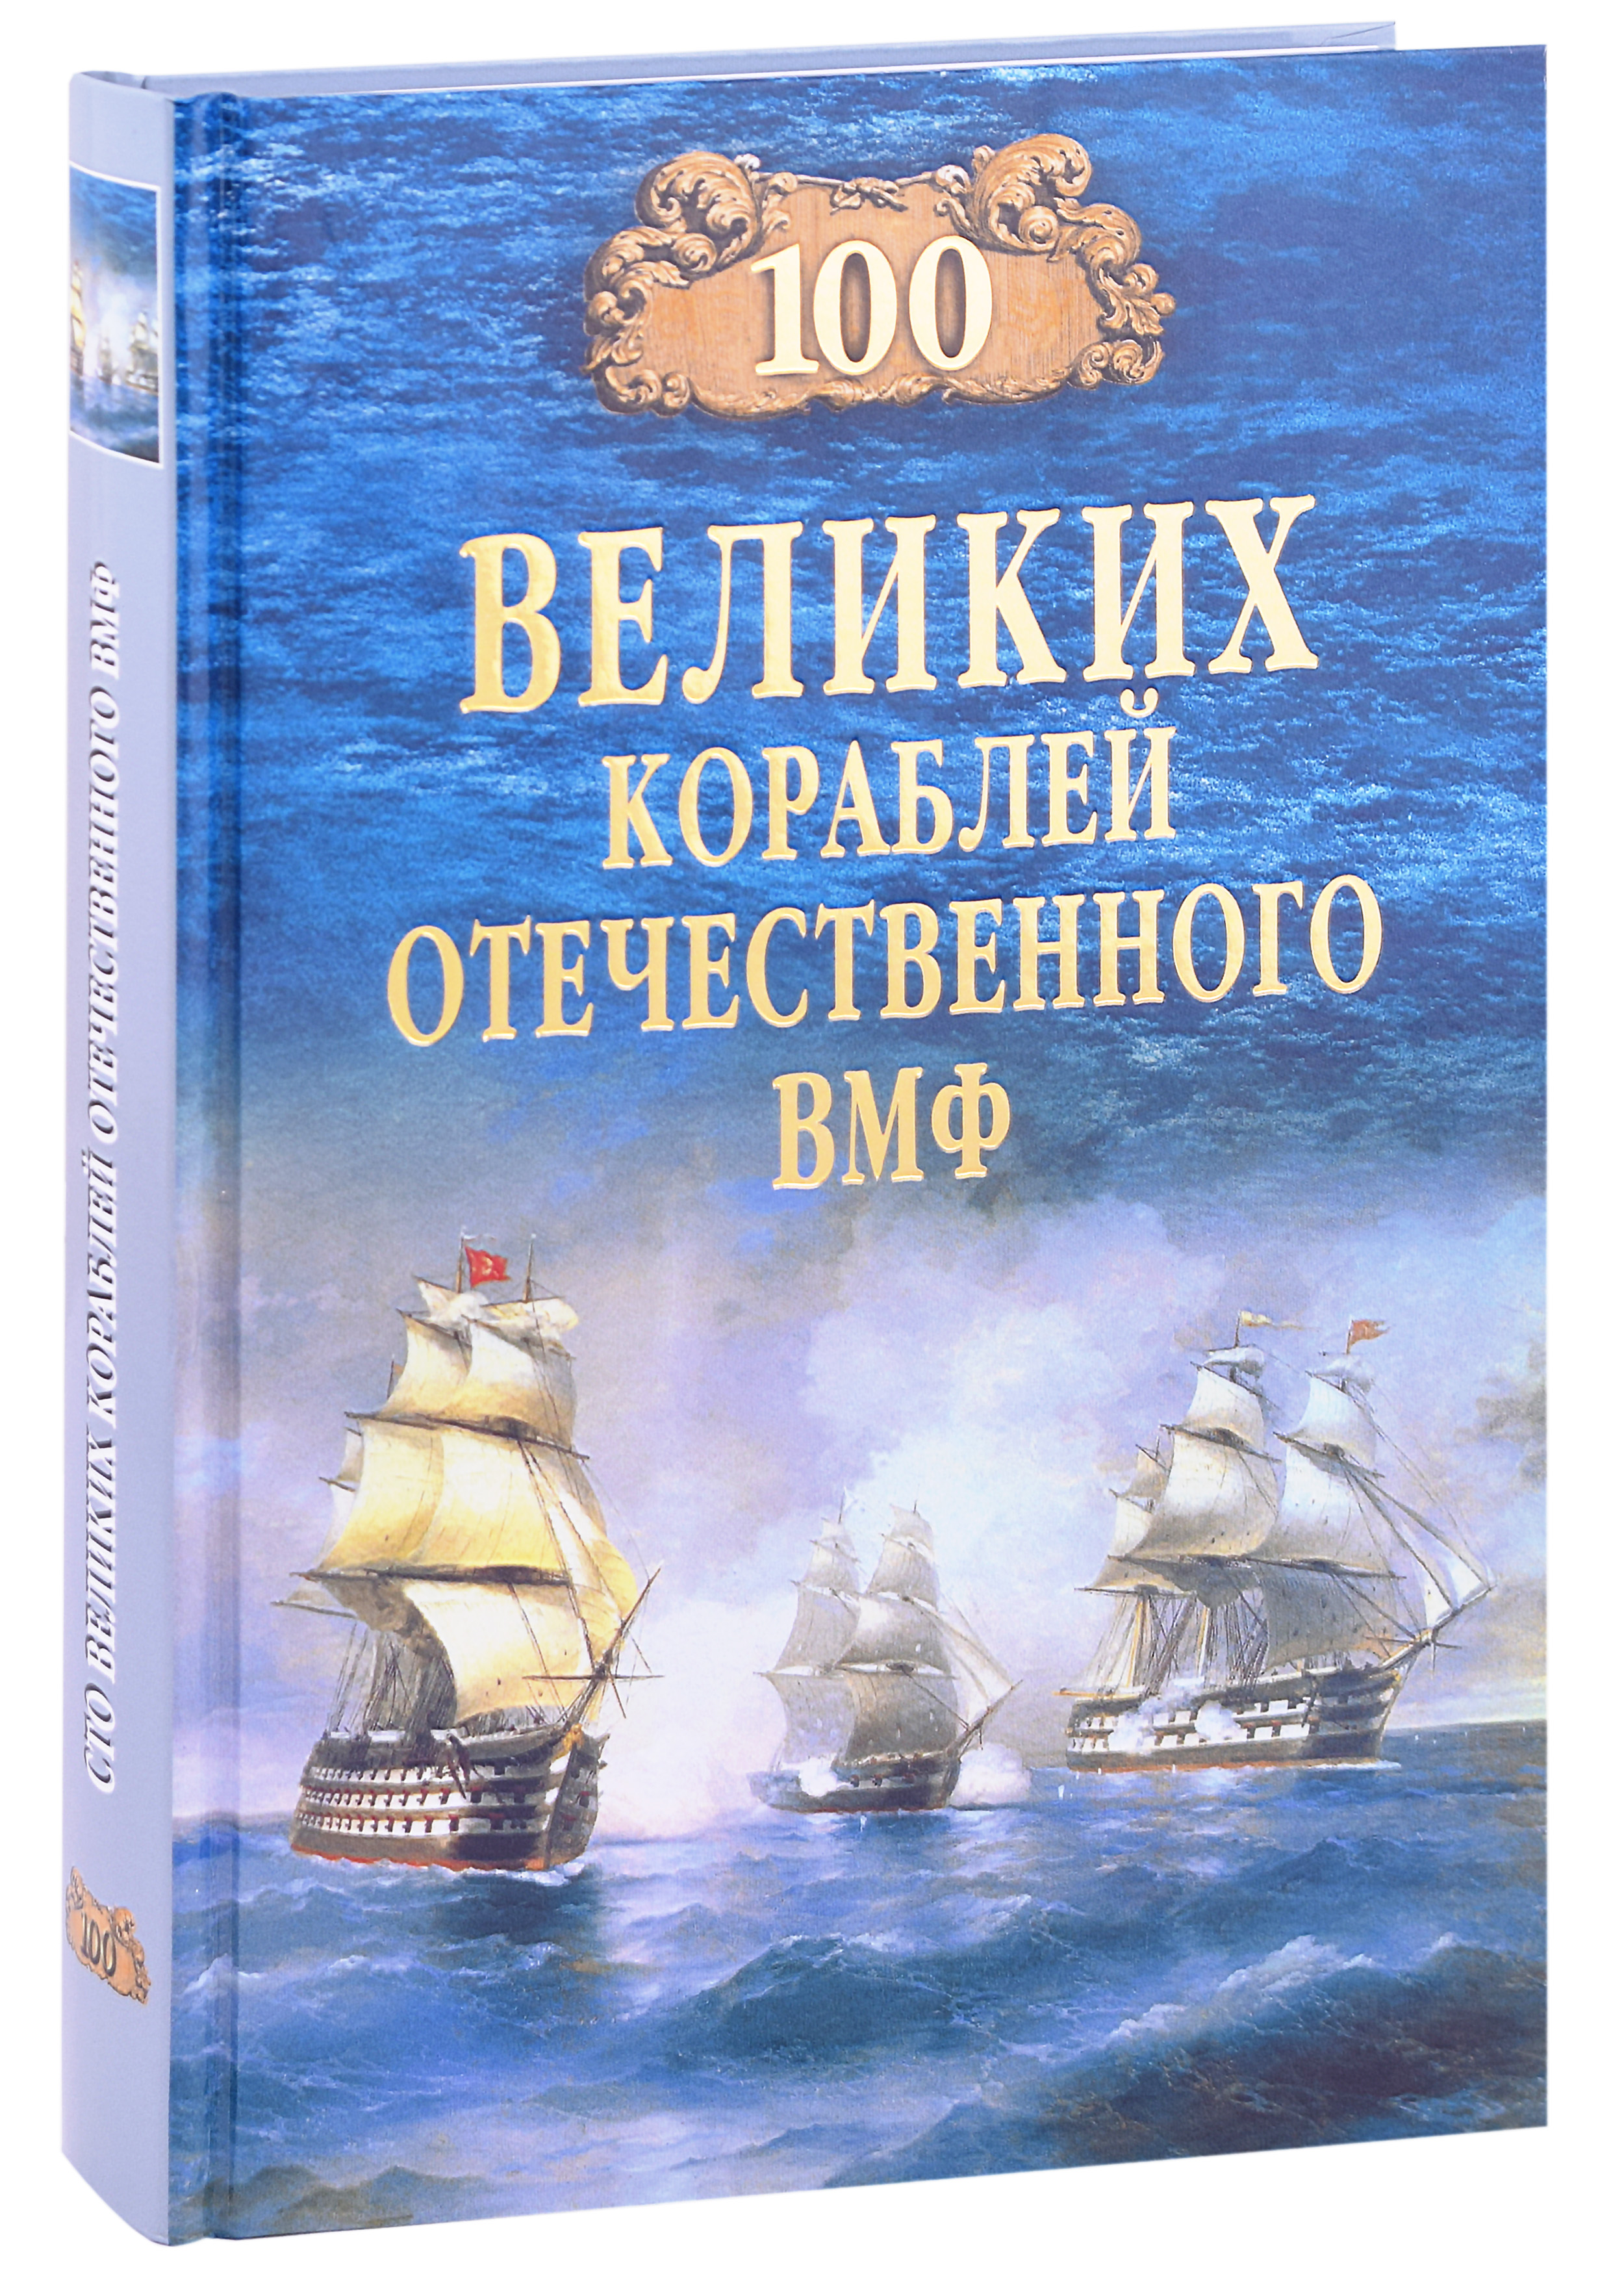 Бондаренко Вячеслав Васильевич - 100 великих кораблей отечественного ВМФ